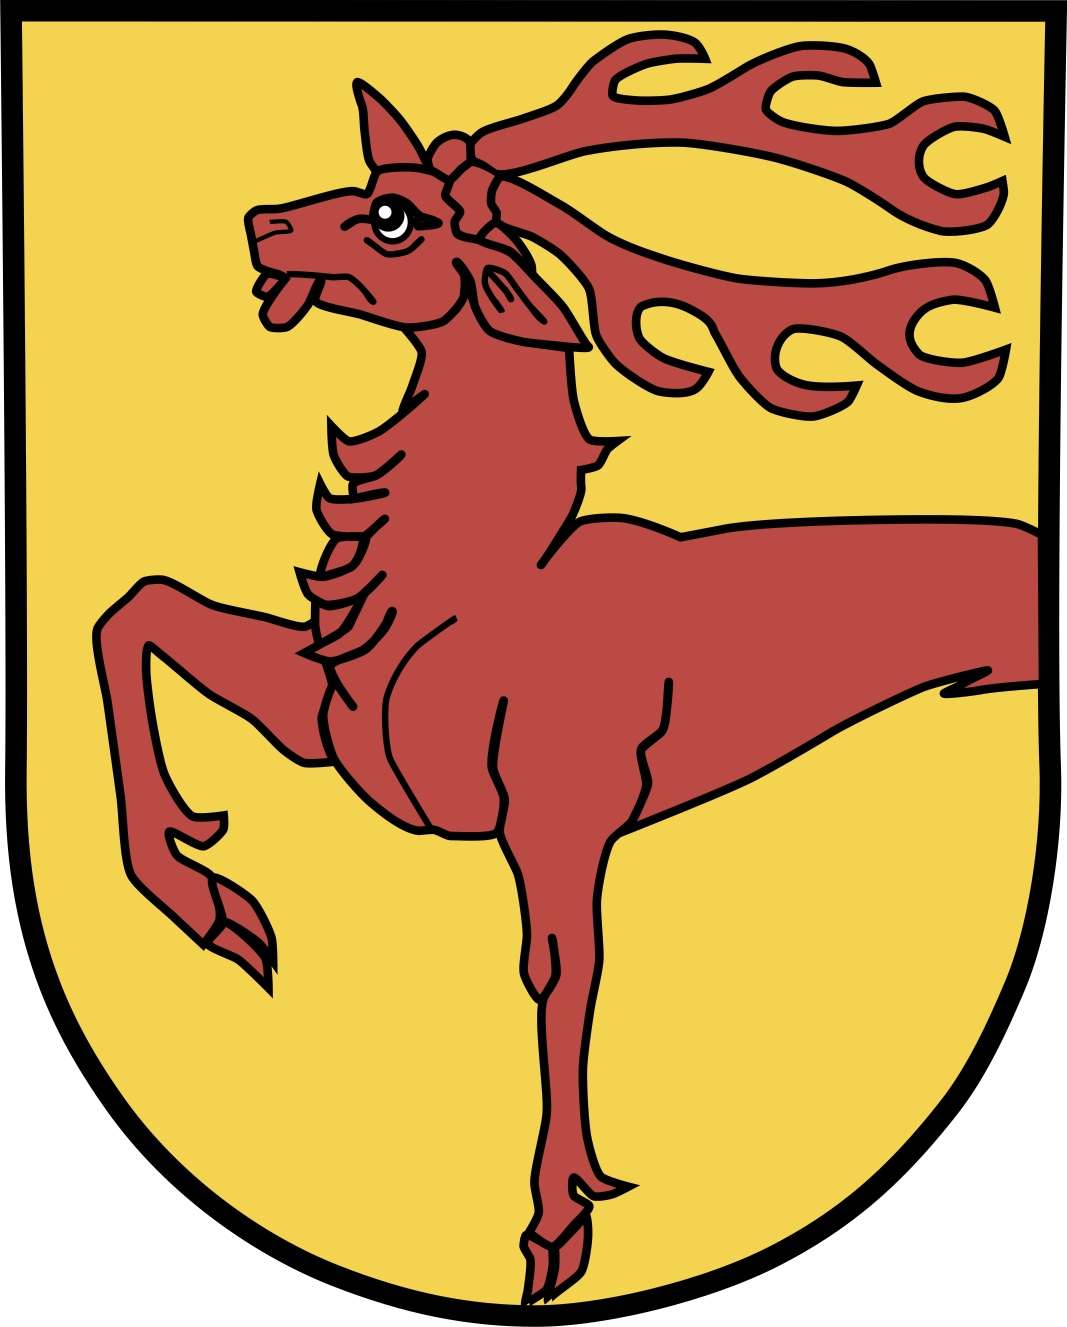 Bild vergrößern: Wappen der Gemeinde Haverlah